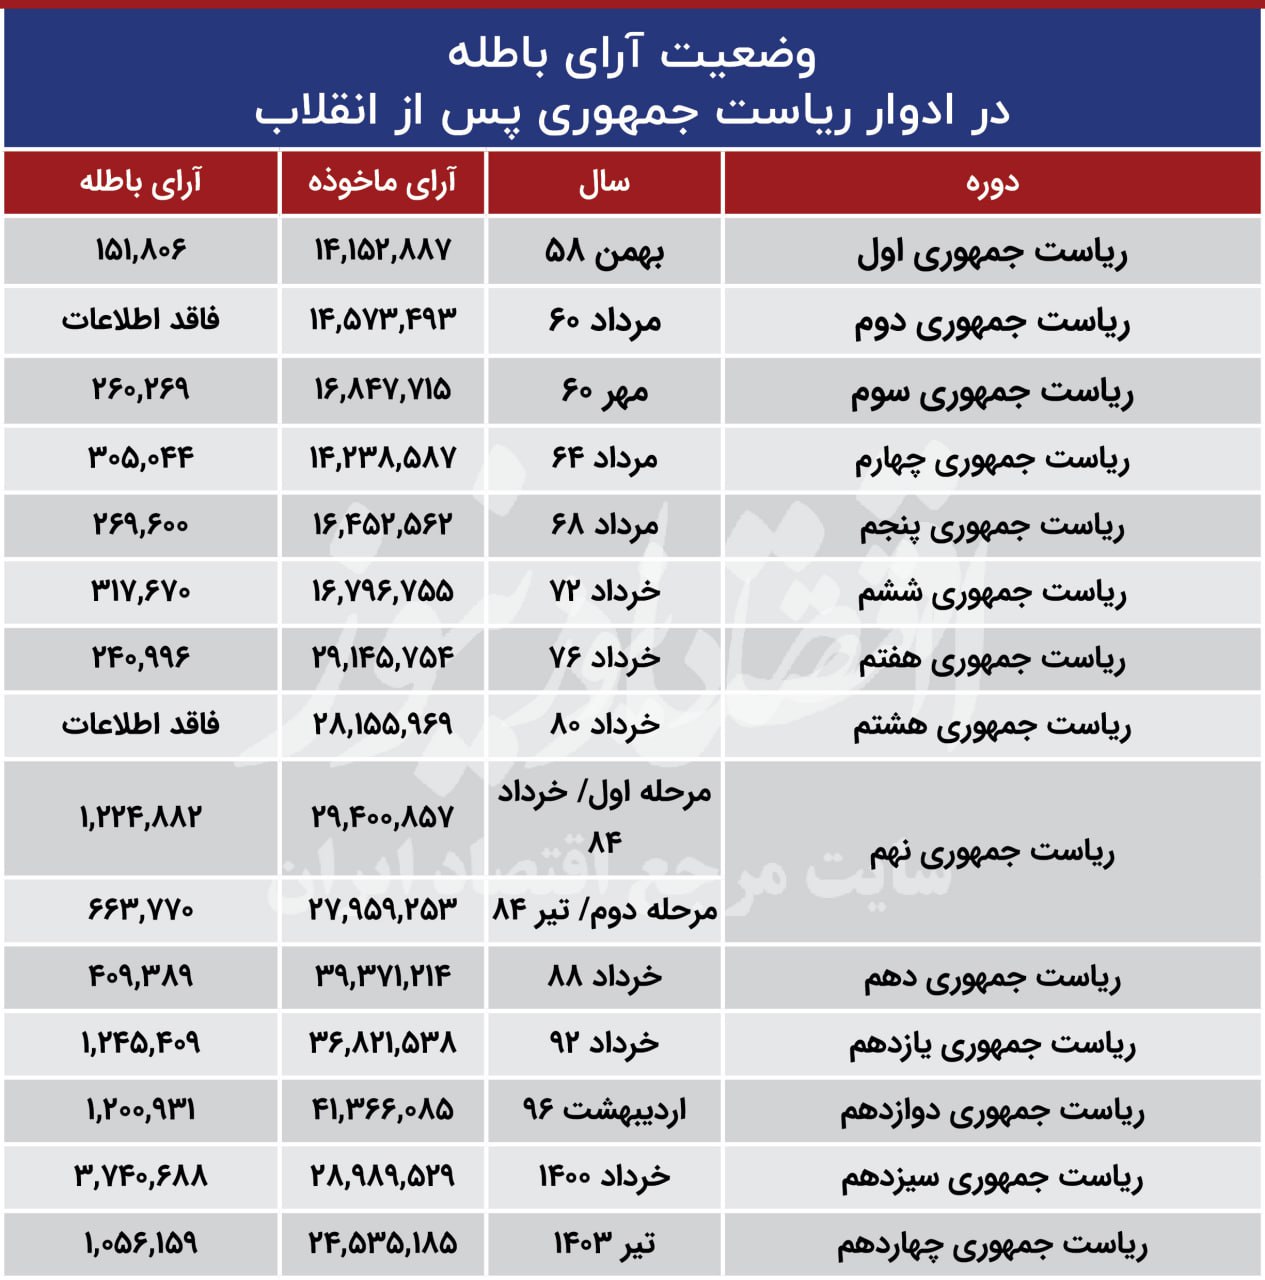 جدال سخت نامزدها با رقیب پنهان؛ بازندگان بزرگ به رای باطله + جدول و نمودار 4